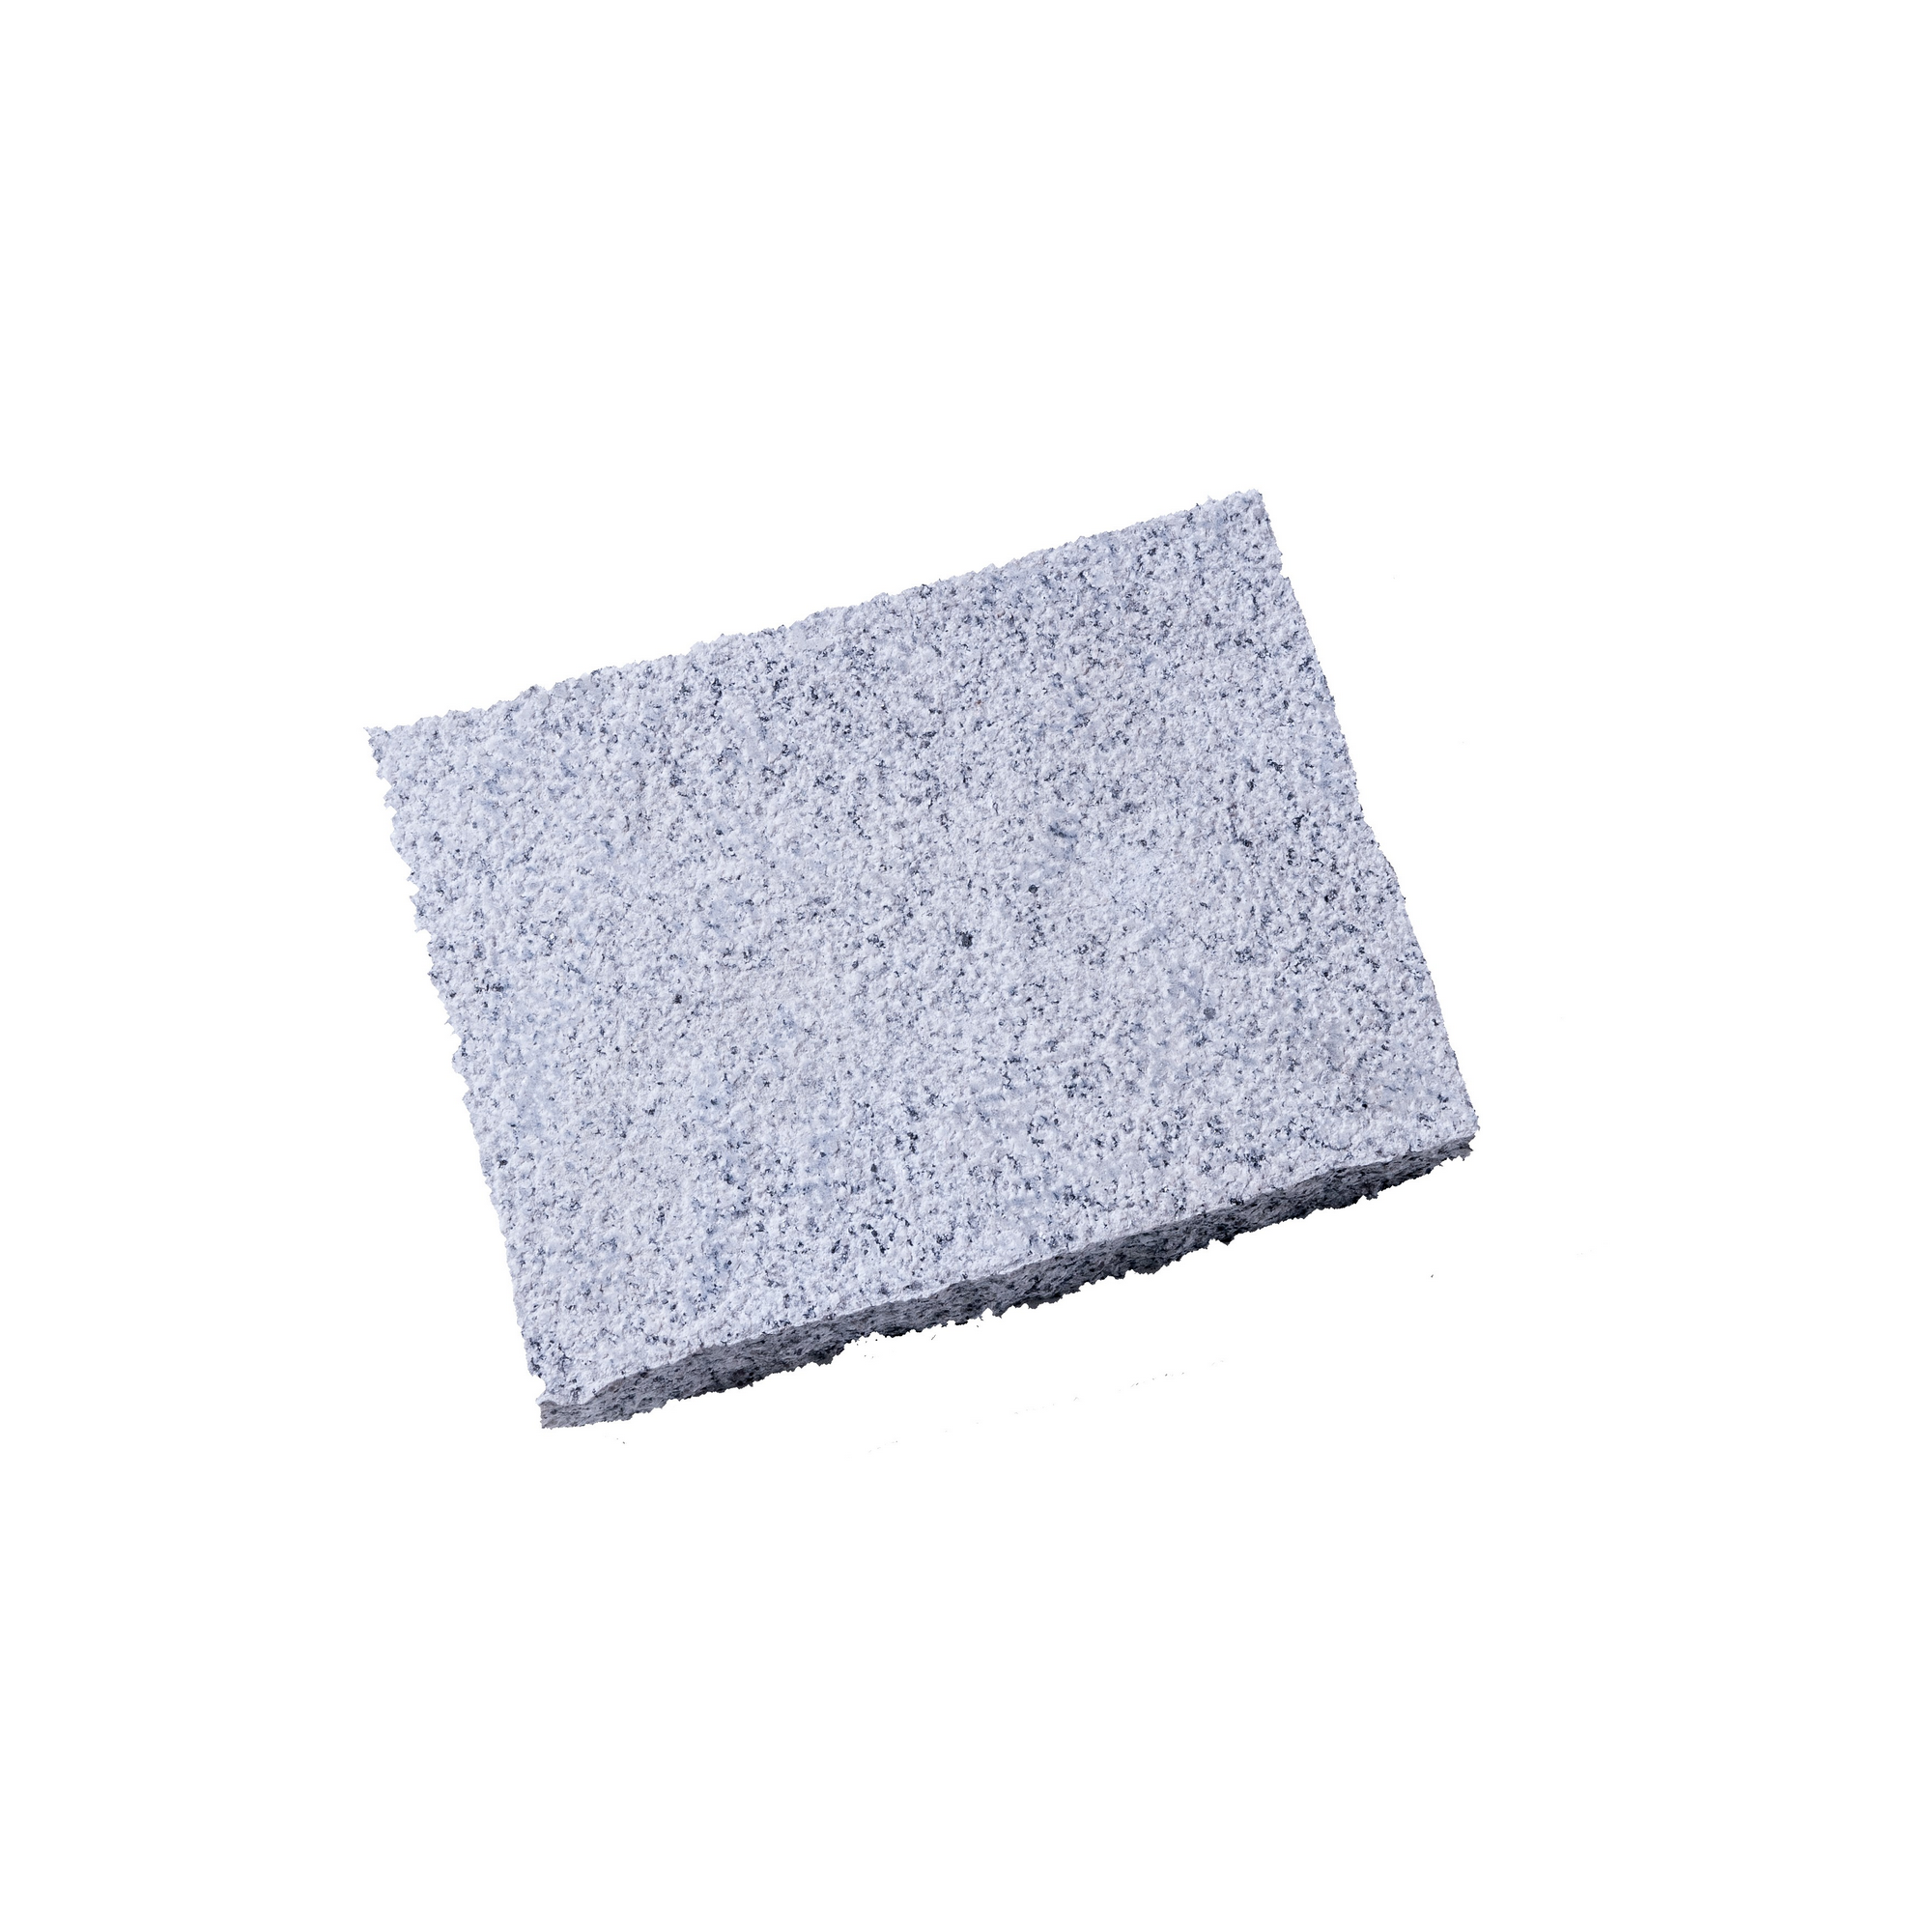 Pflasterstein 'Granit ' Naturstein grauweiß 24 x 18 x 5 cm + product picture